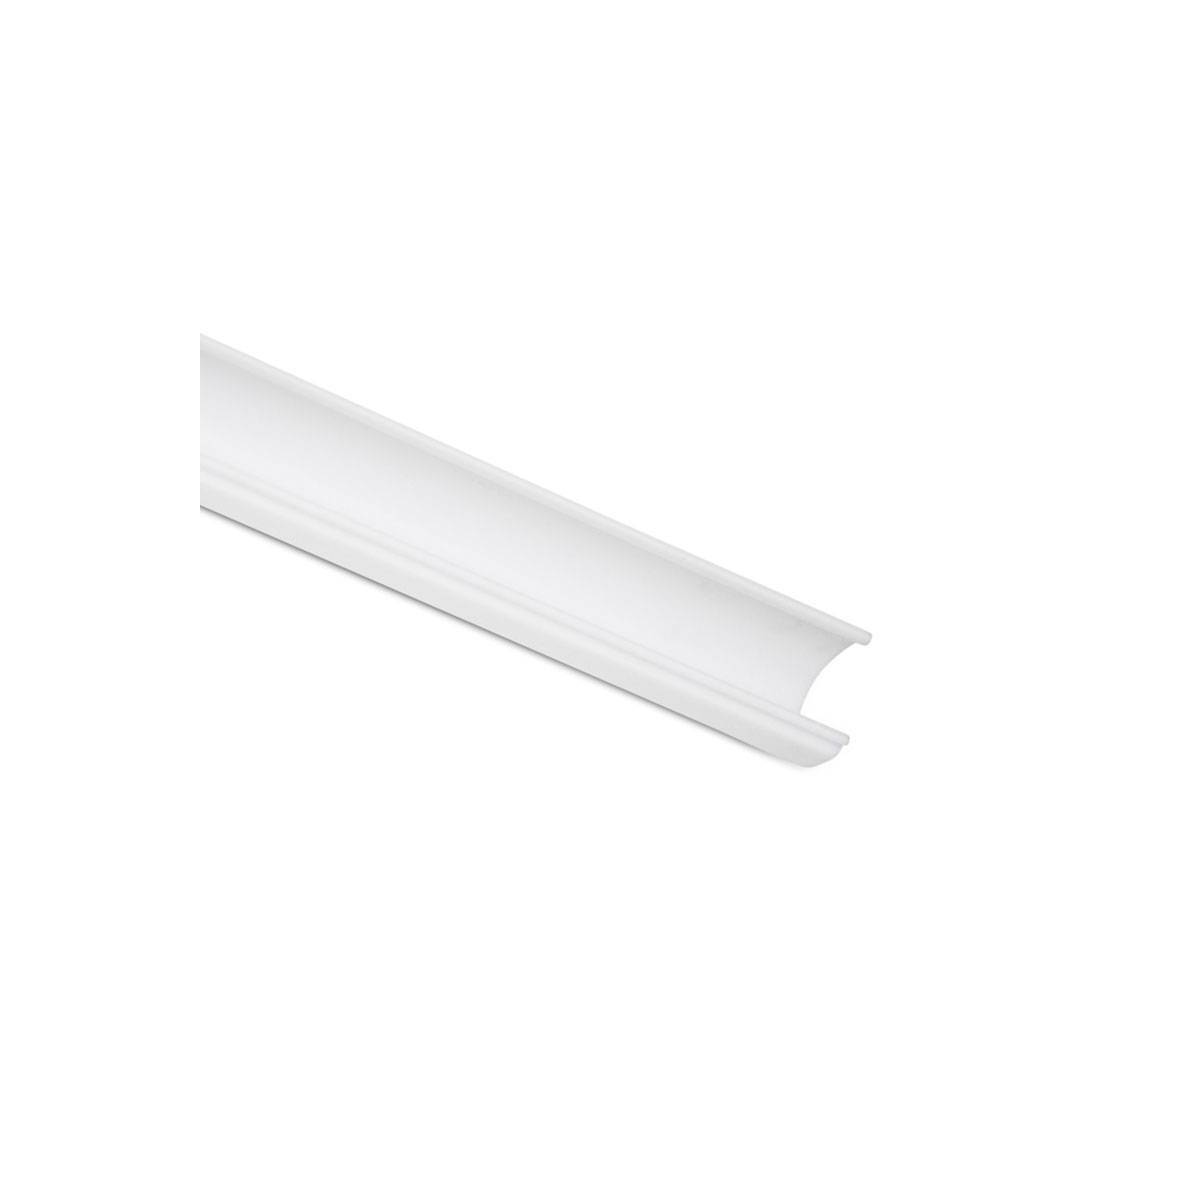 Difusor Branco Opalino para perfil 20x27mm (2m)